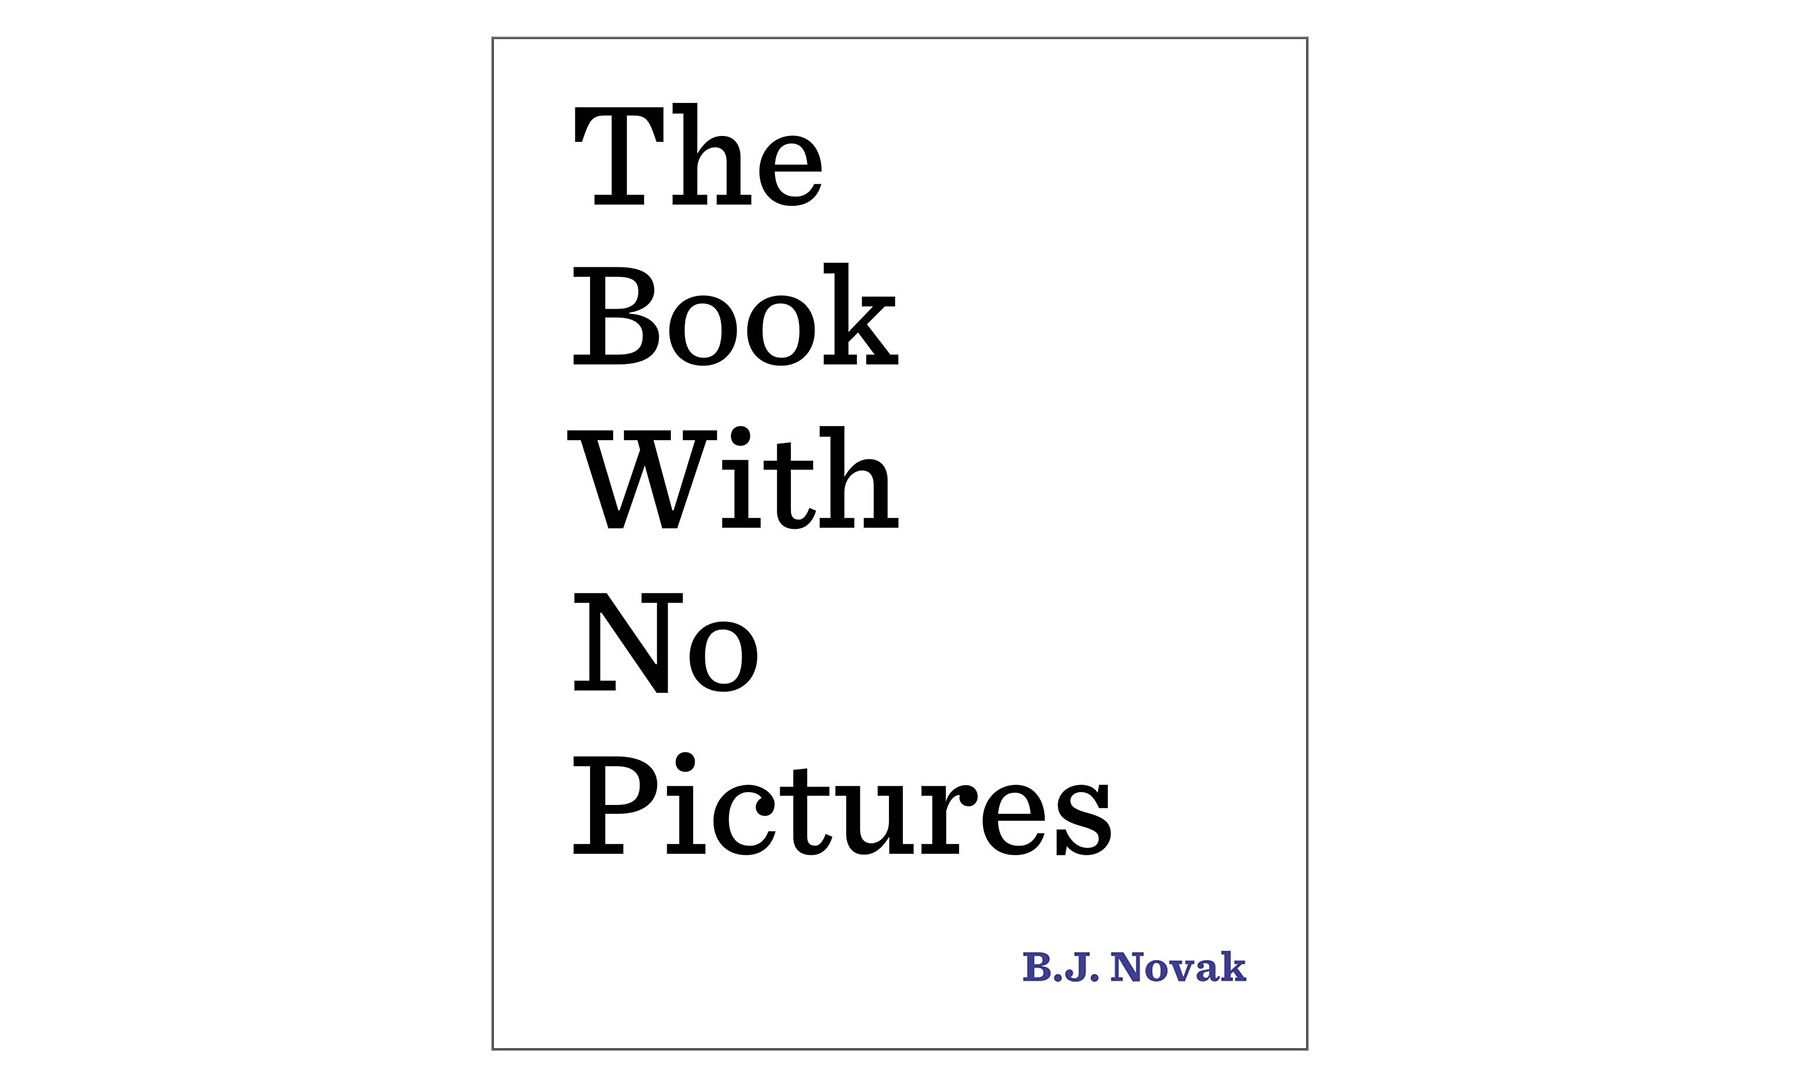 Cartea fără imagini, de B.J. Novak